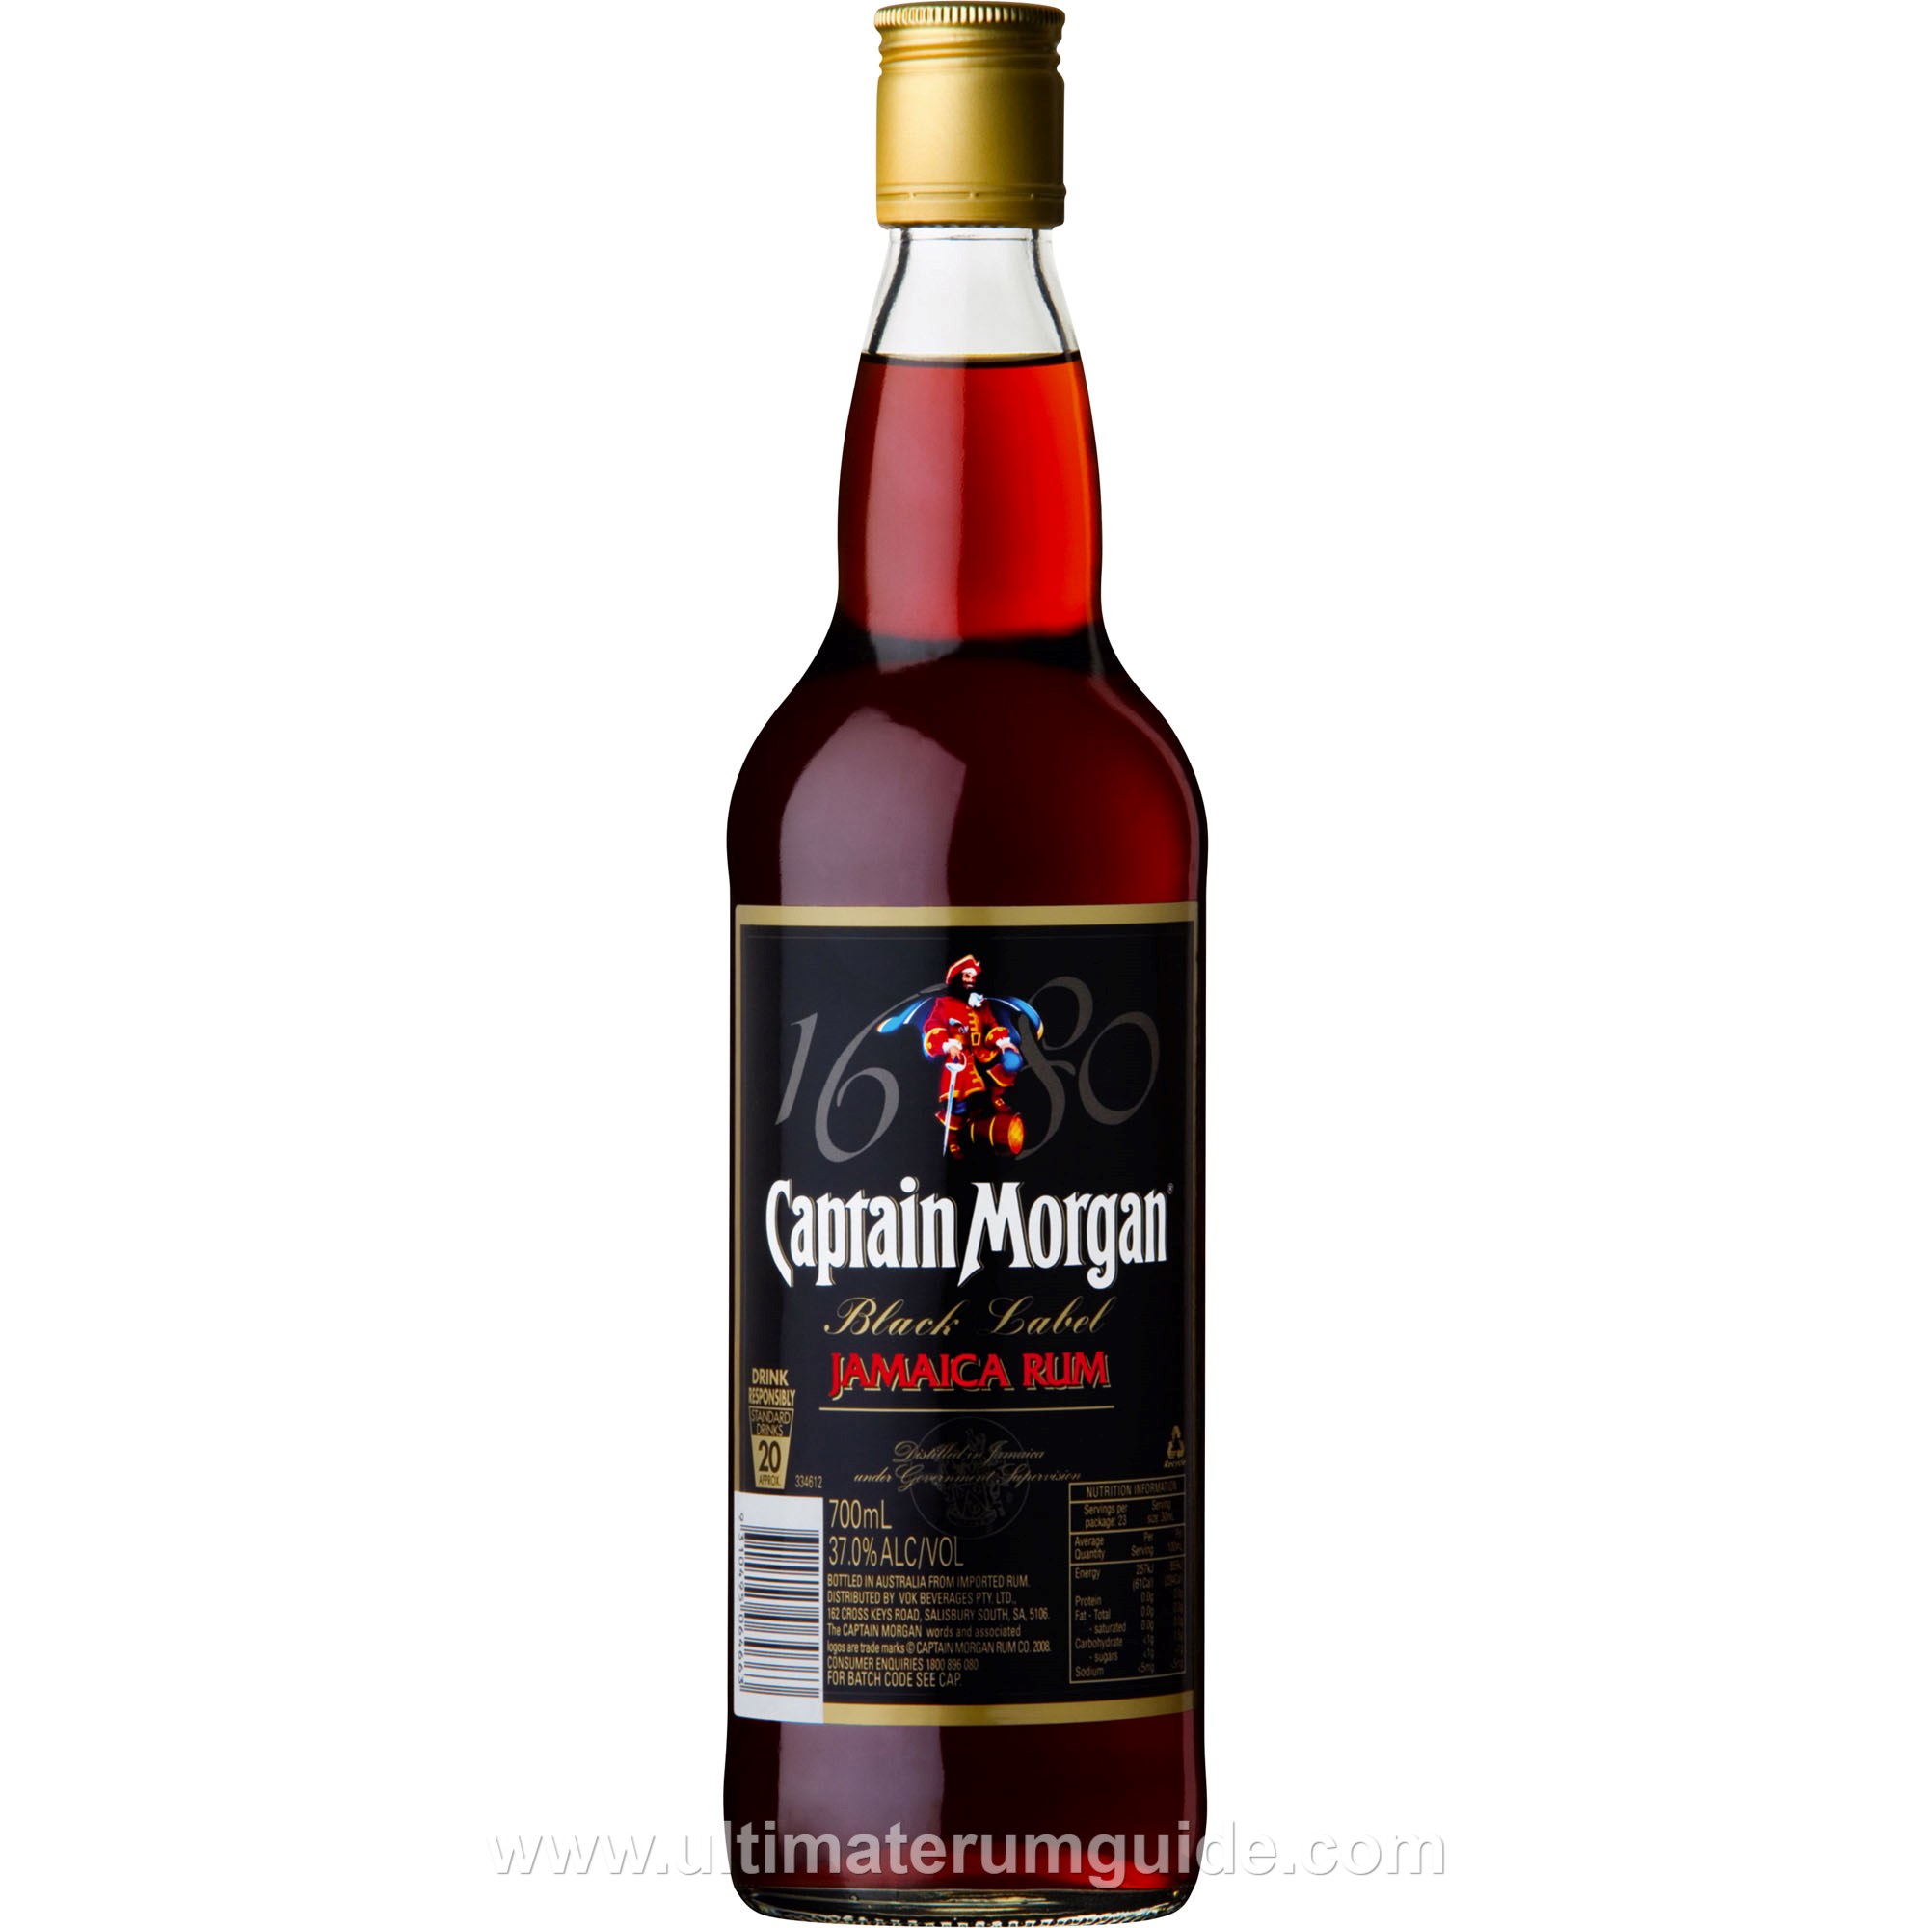 Captain Morgan Dark Rum – Rum Guide Ultimate